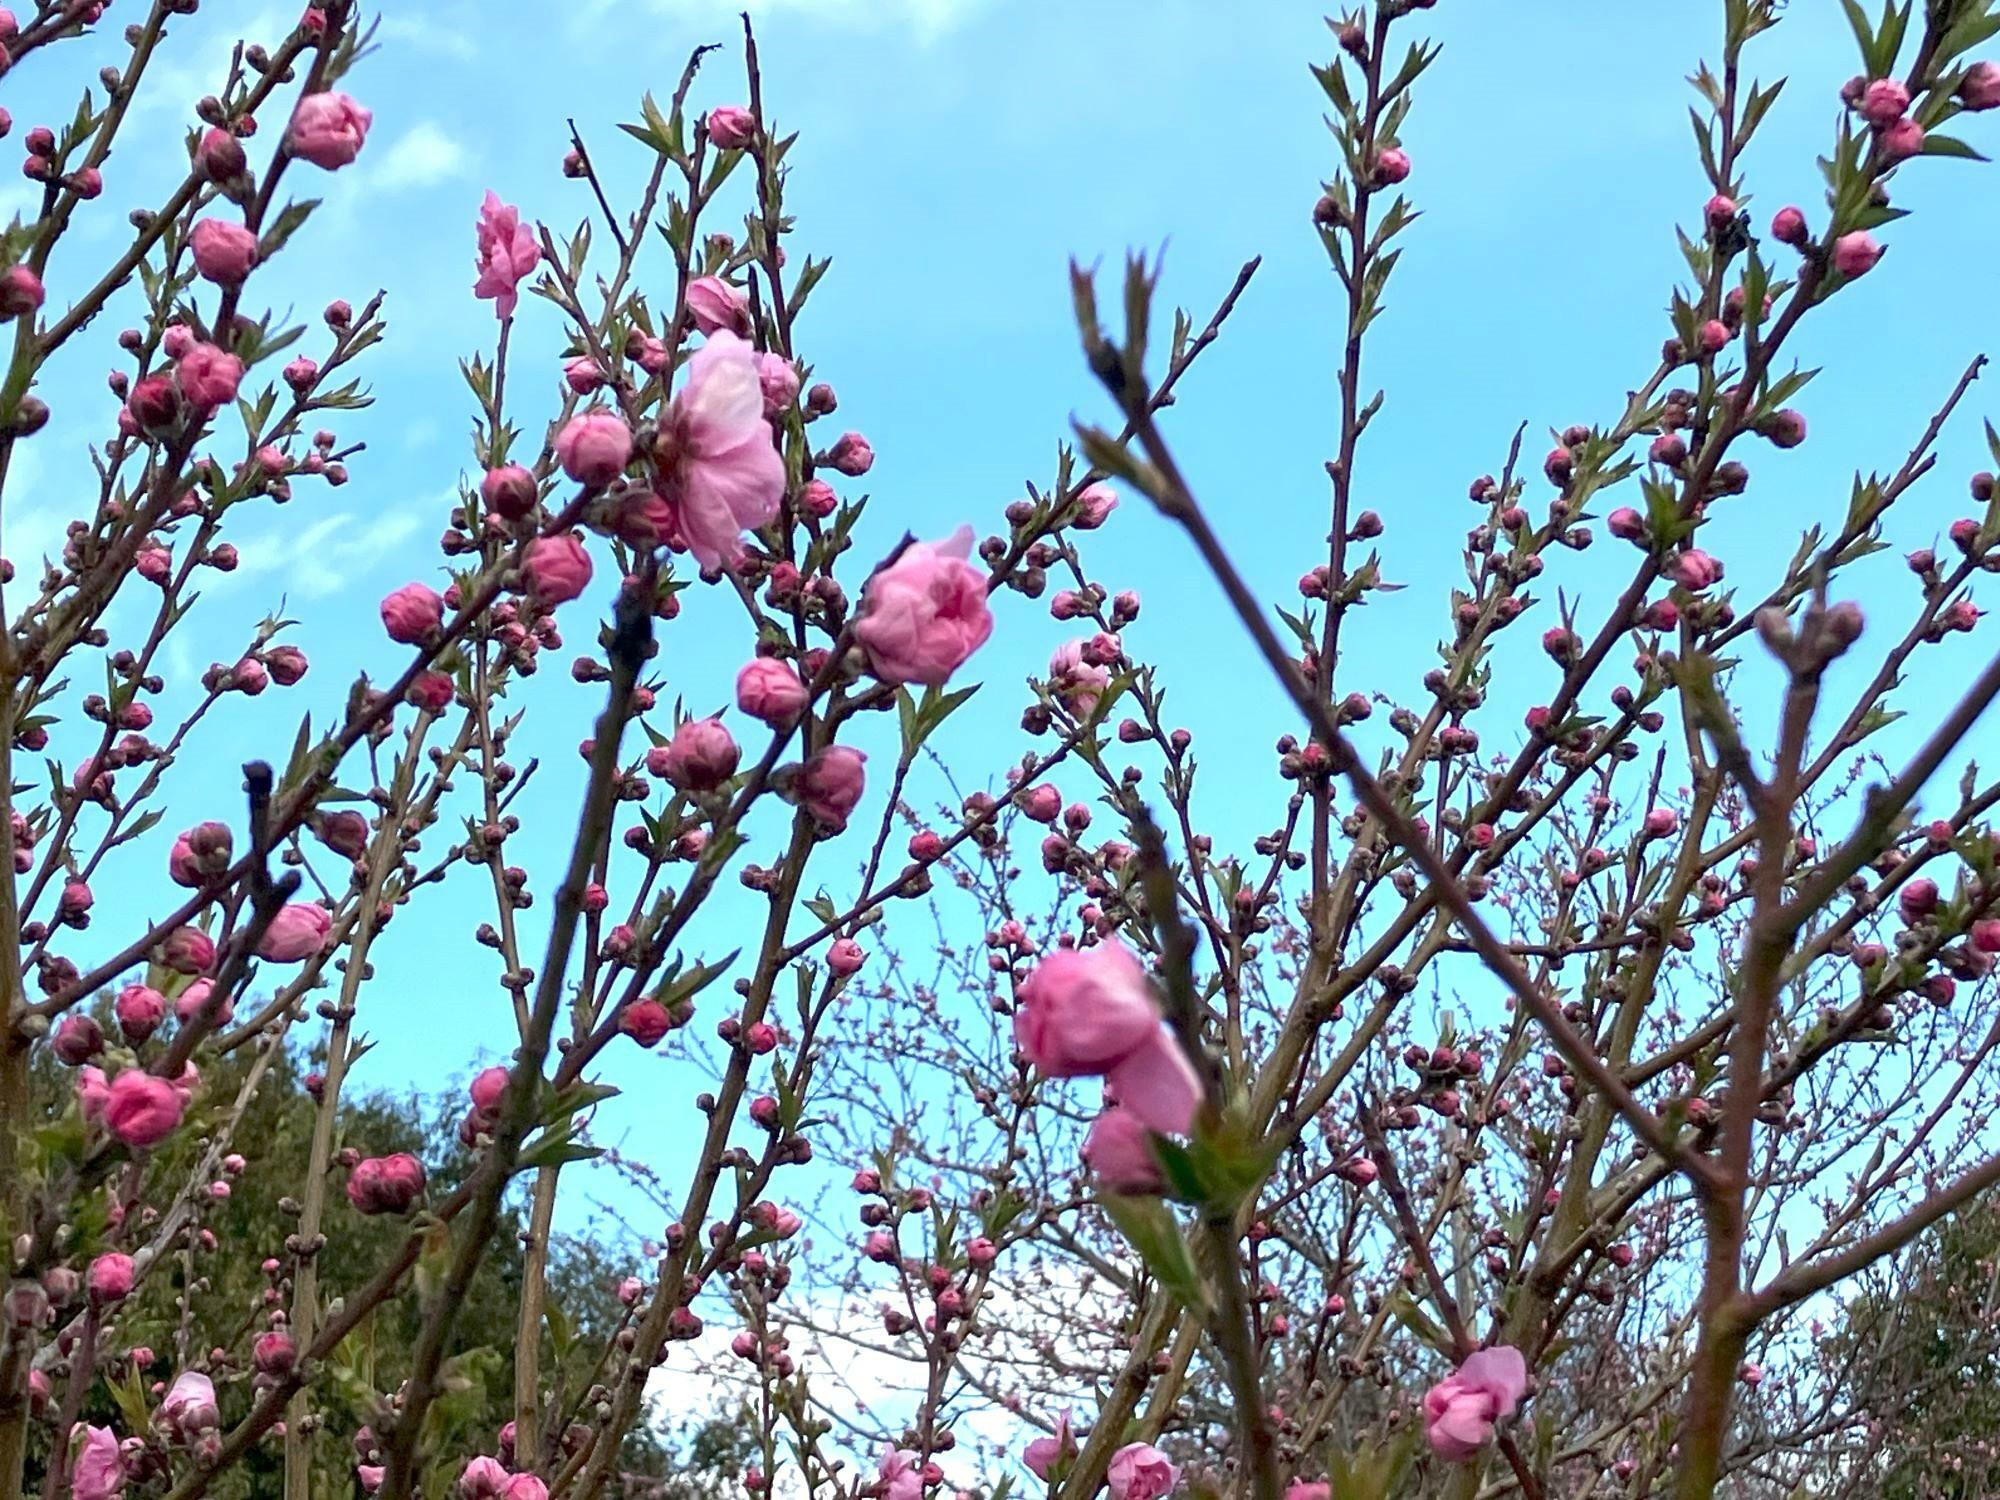 中川やしおフラワーパーク、3月2日の花桃の様子です。